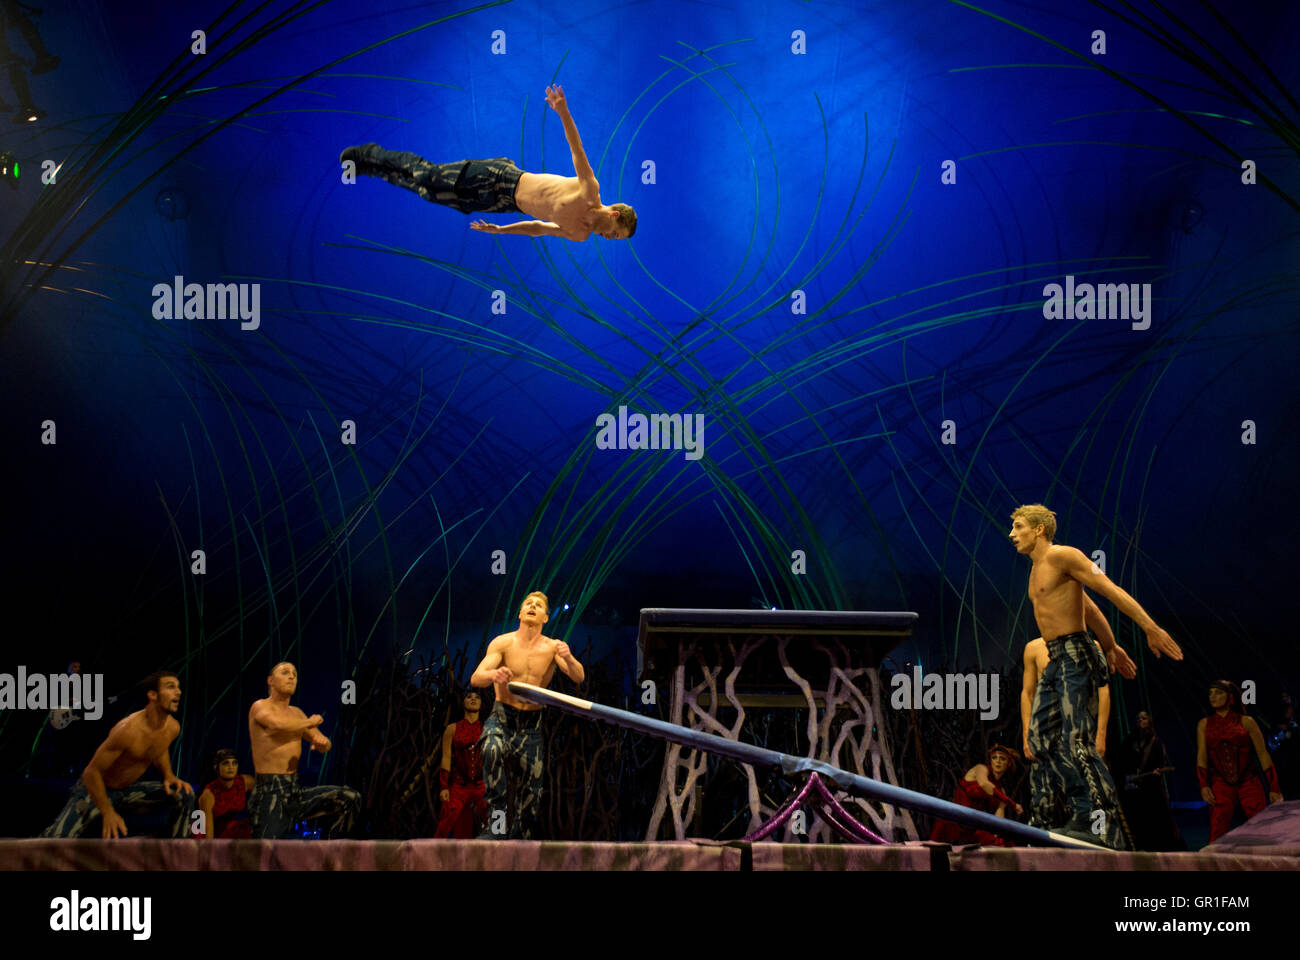 Manchester, Regno Unito. Il 6 settembre 2016. Le prove abito / Anteprima del Cirque du Soleil la produzione 'Amaluna' in funzione dal 7 Settembre al 9 ottobre 2016. Credito: Russell Hart/Alamy Live News. Foto Stock